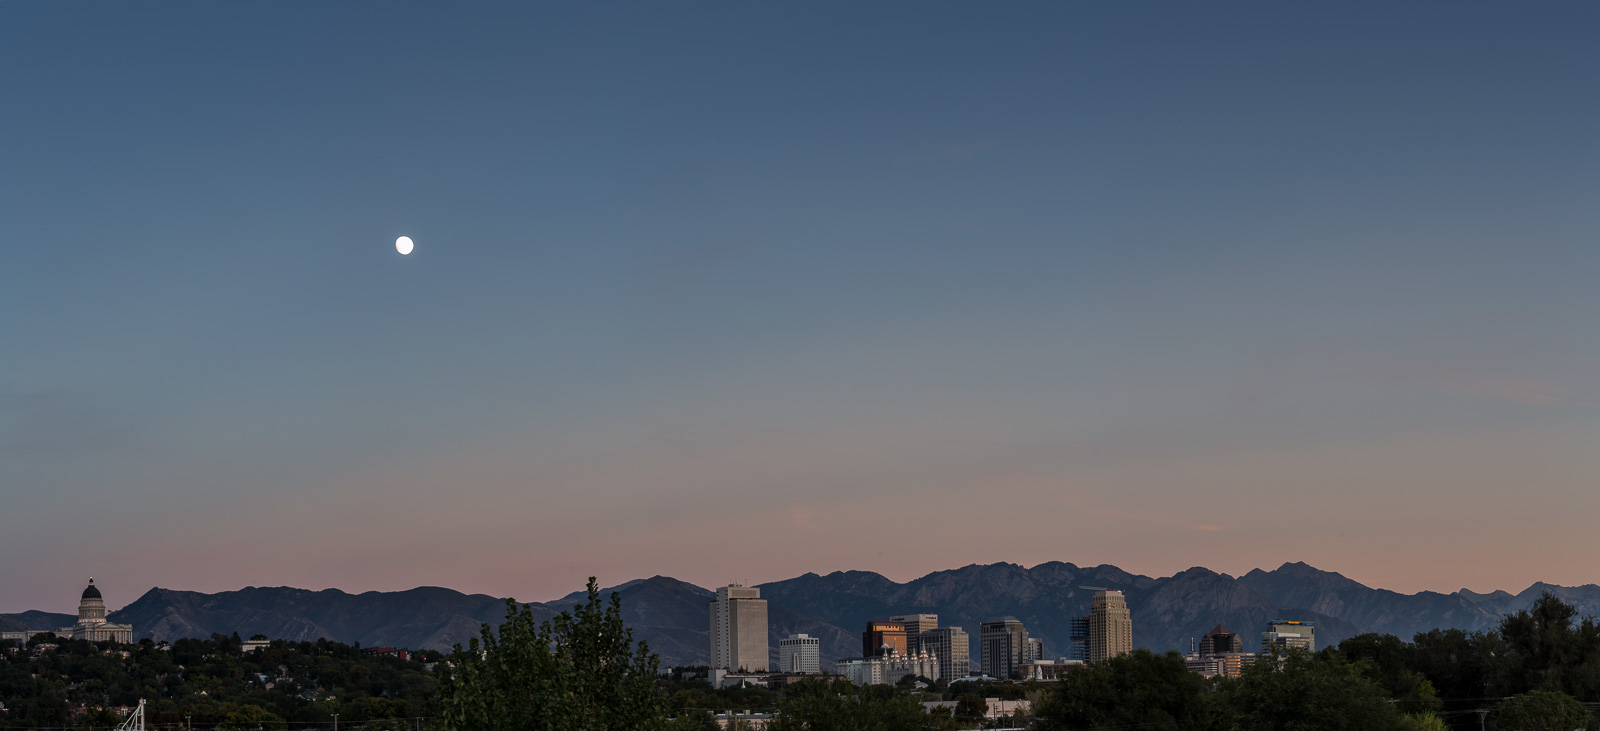 Salt Lake City, Utah skyline. State Capitol building on the left; LDS Temple center. Semptember, 2015.